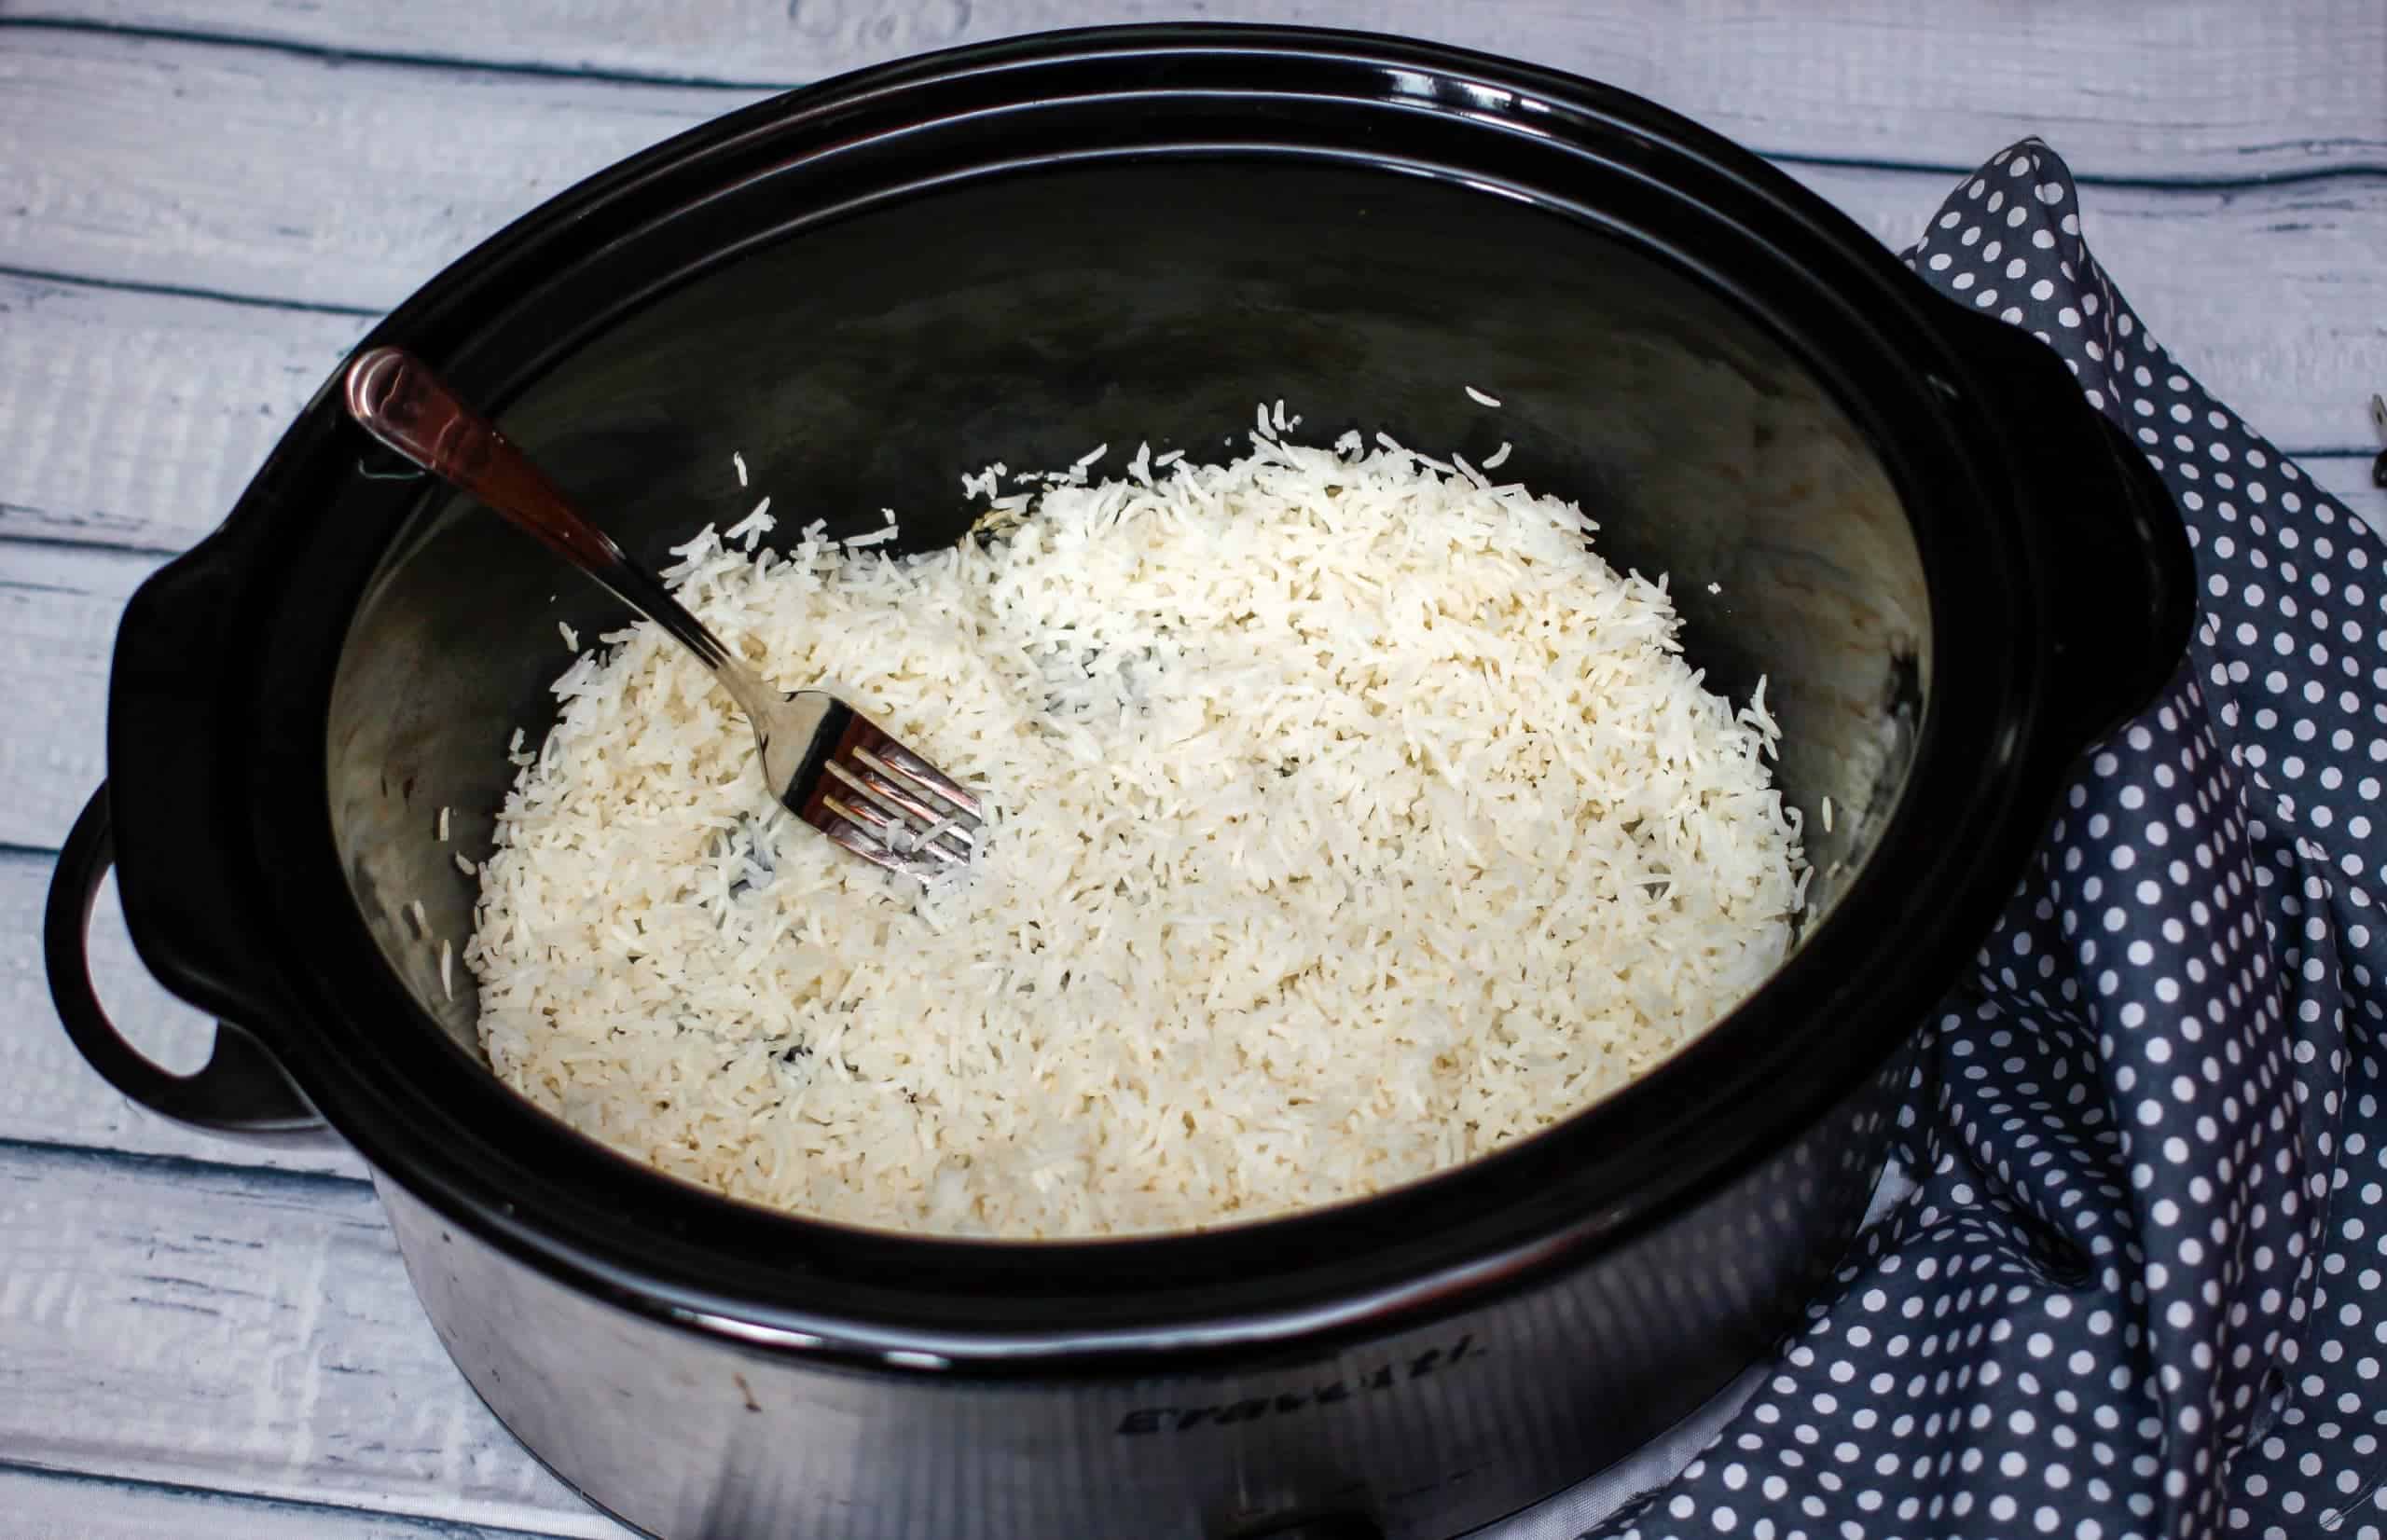 Crock pot with rice